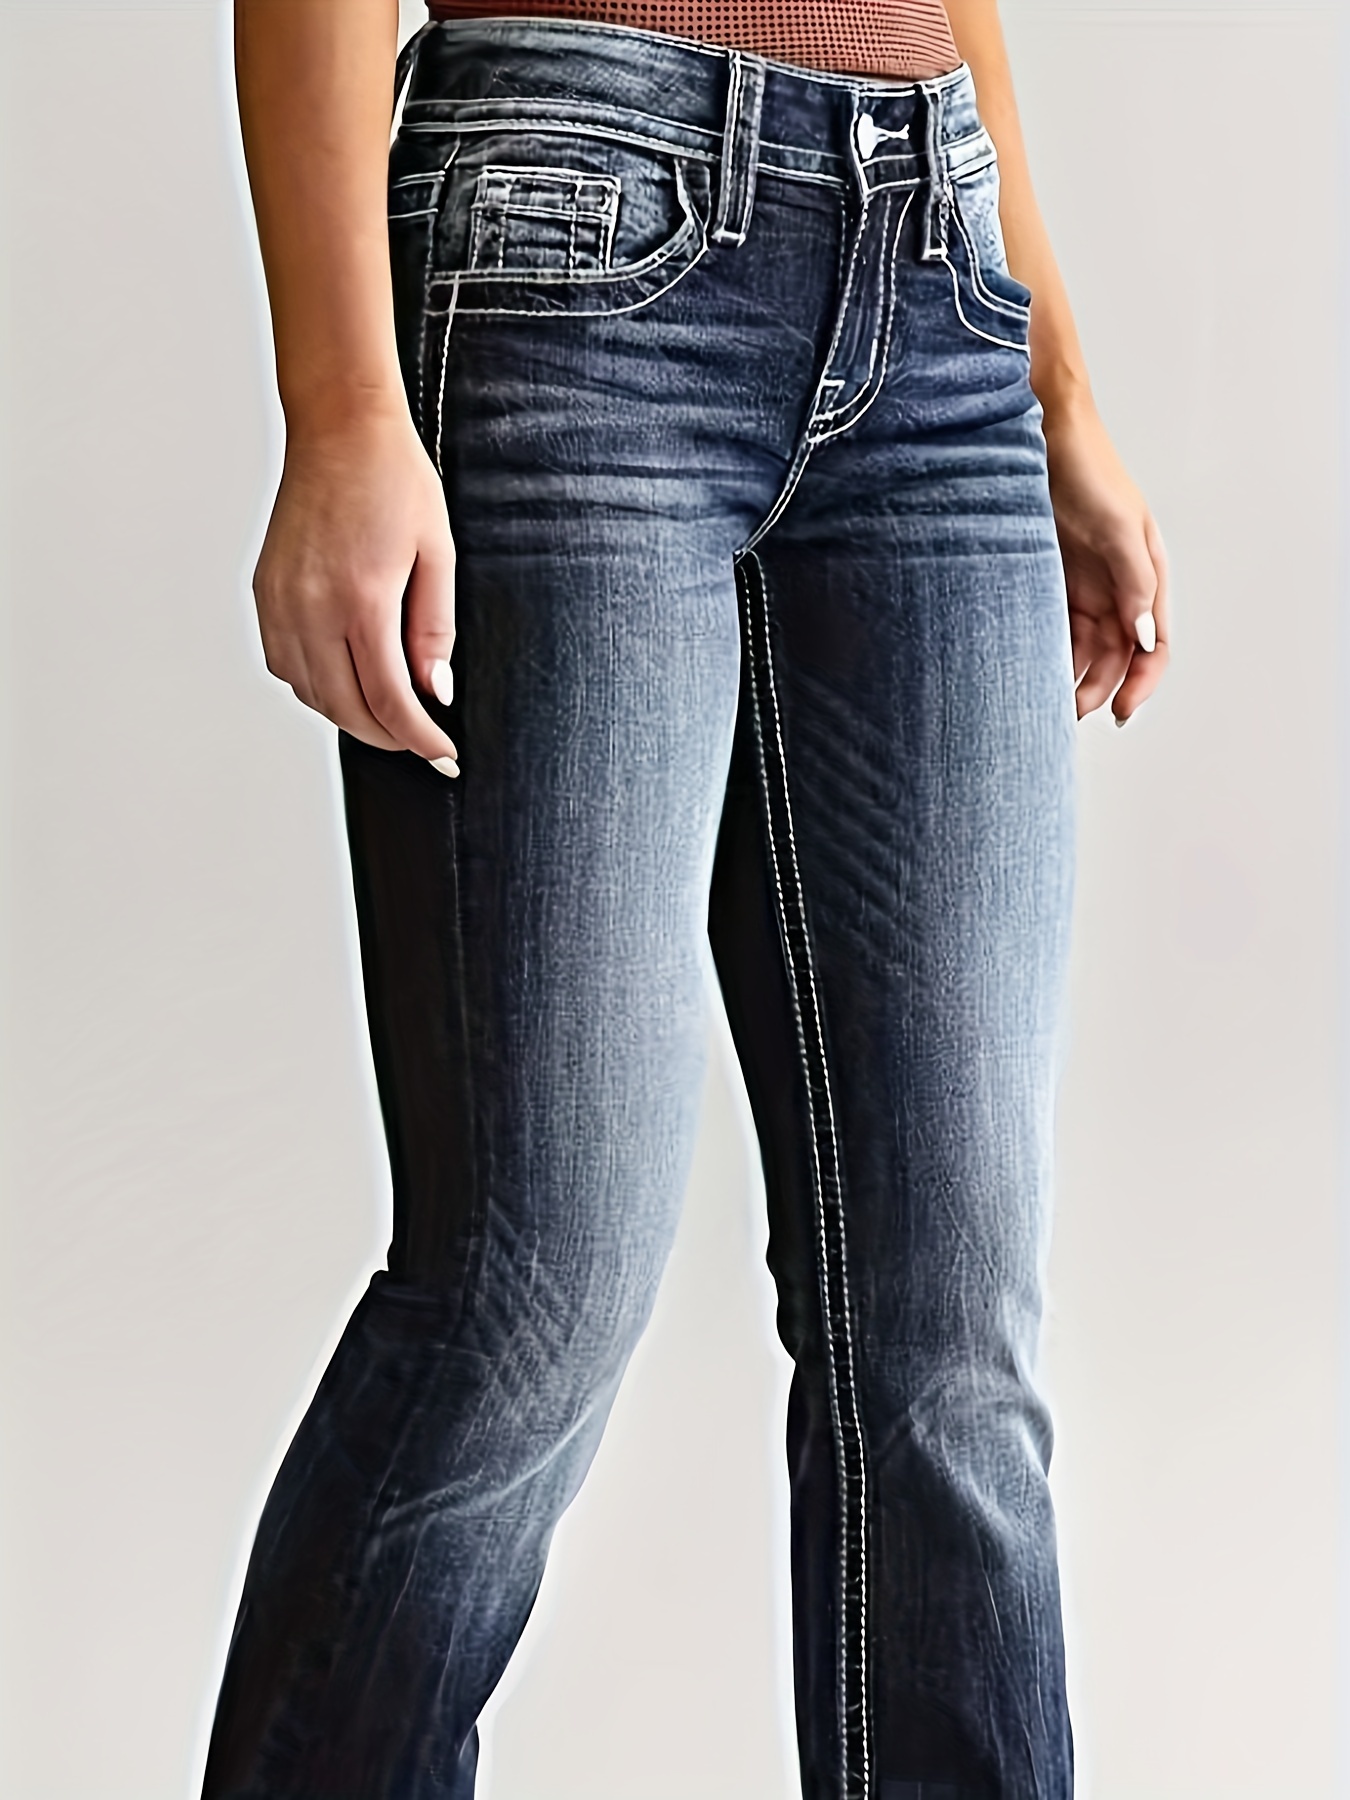 Jeans negros ajustados a las piernas, pantalones de mezclilla elastizados  con botones y bolsillos diagonales, pantalones de mezclilla para mujer